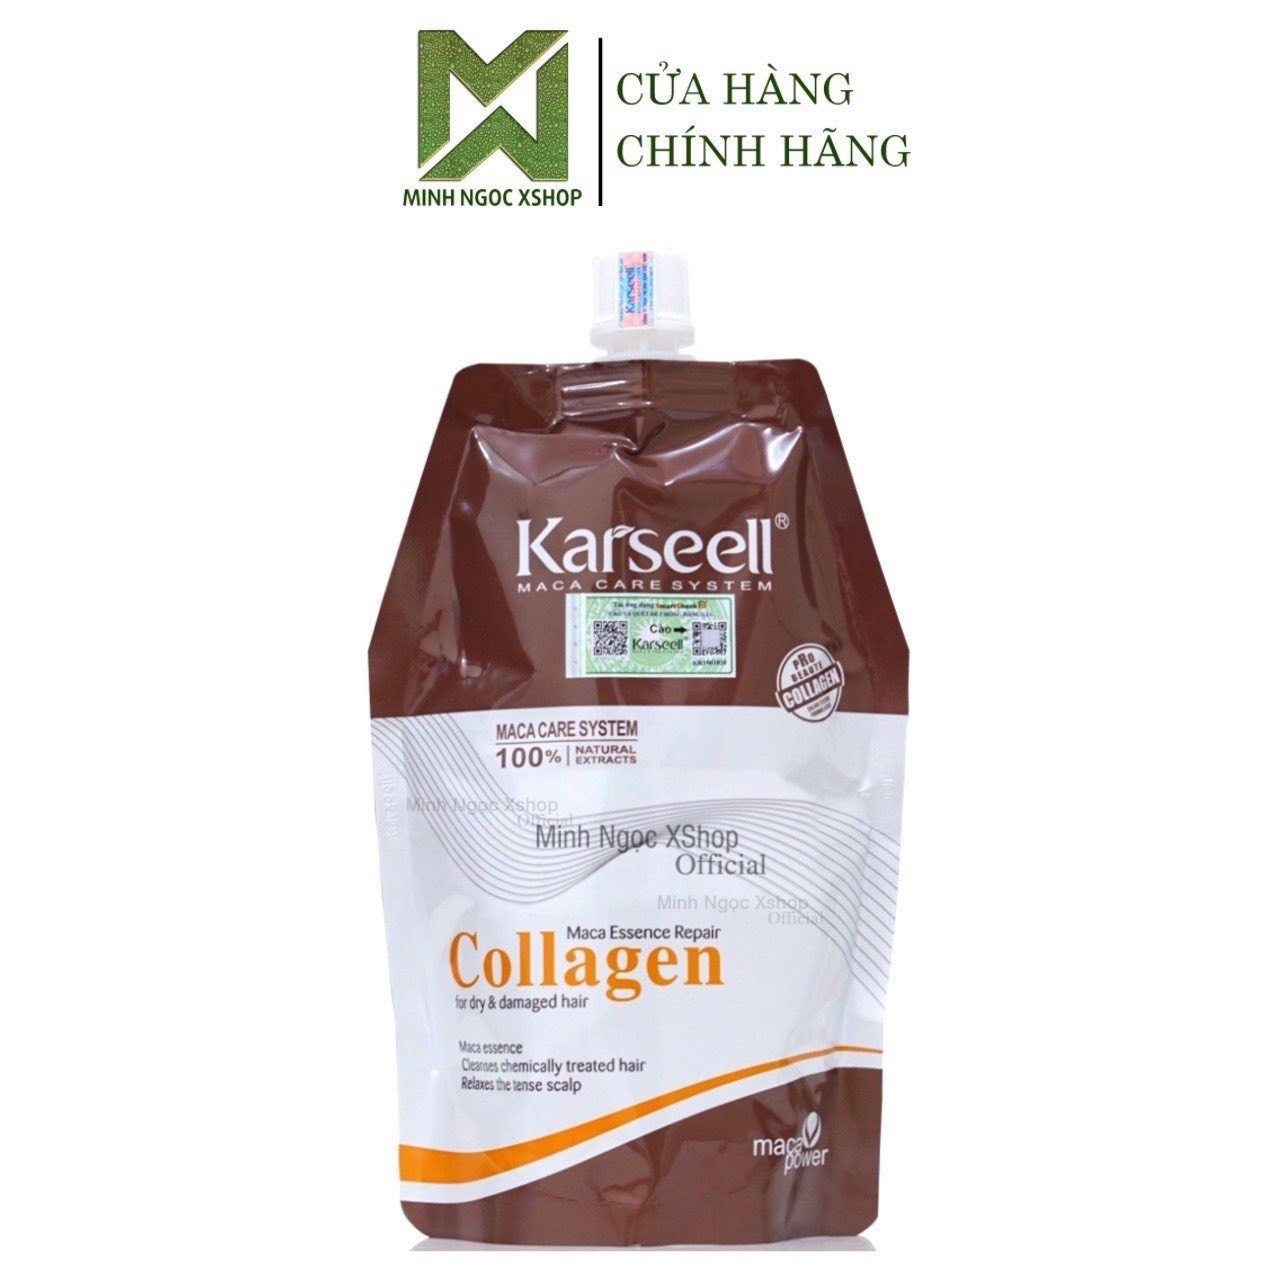 HOÀN TIỀN 15% - Kem ủ tóc dầu hấp Collagen Karseell dạng túi 500ML chính hãng